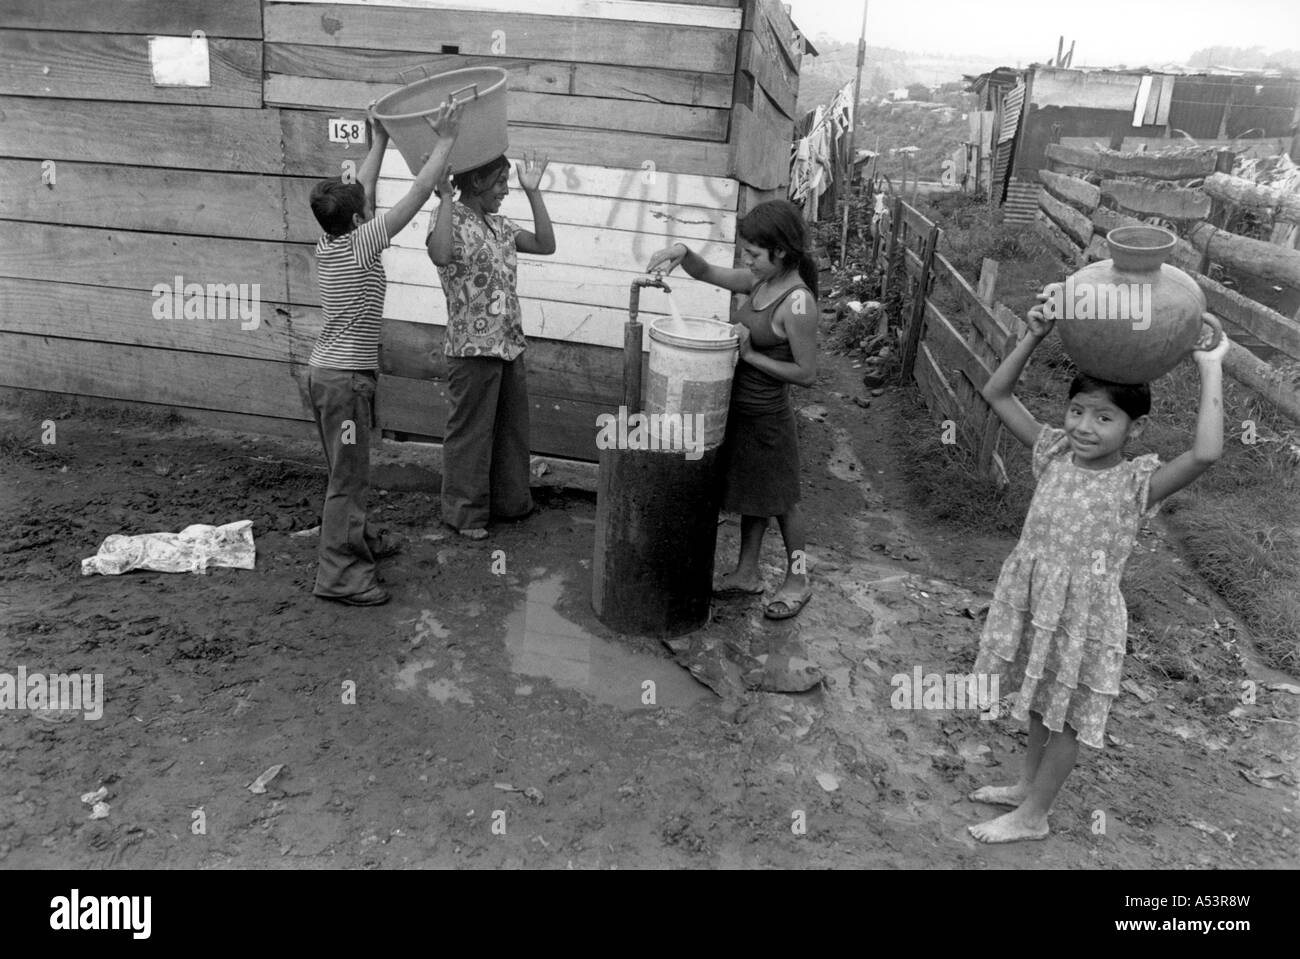 Painet ha1822 360 noir et blanc pour collecter l'eau, l'assainissement des taudis enfants robinet Guatemala Ville Pays Pays en développement moins Banque D'Images